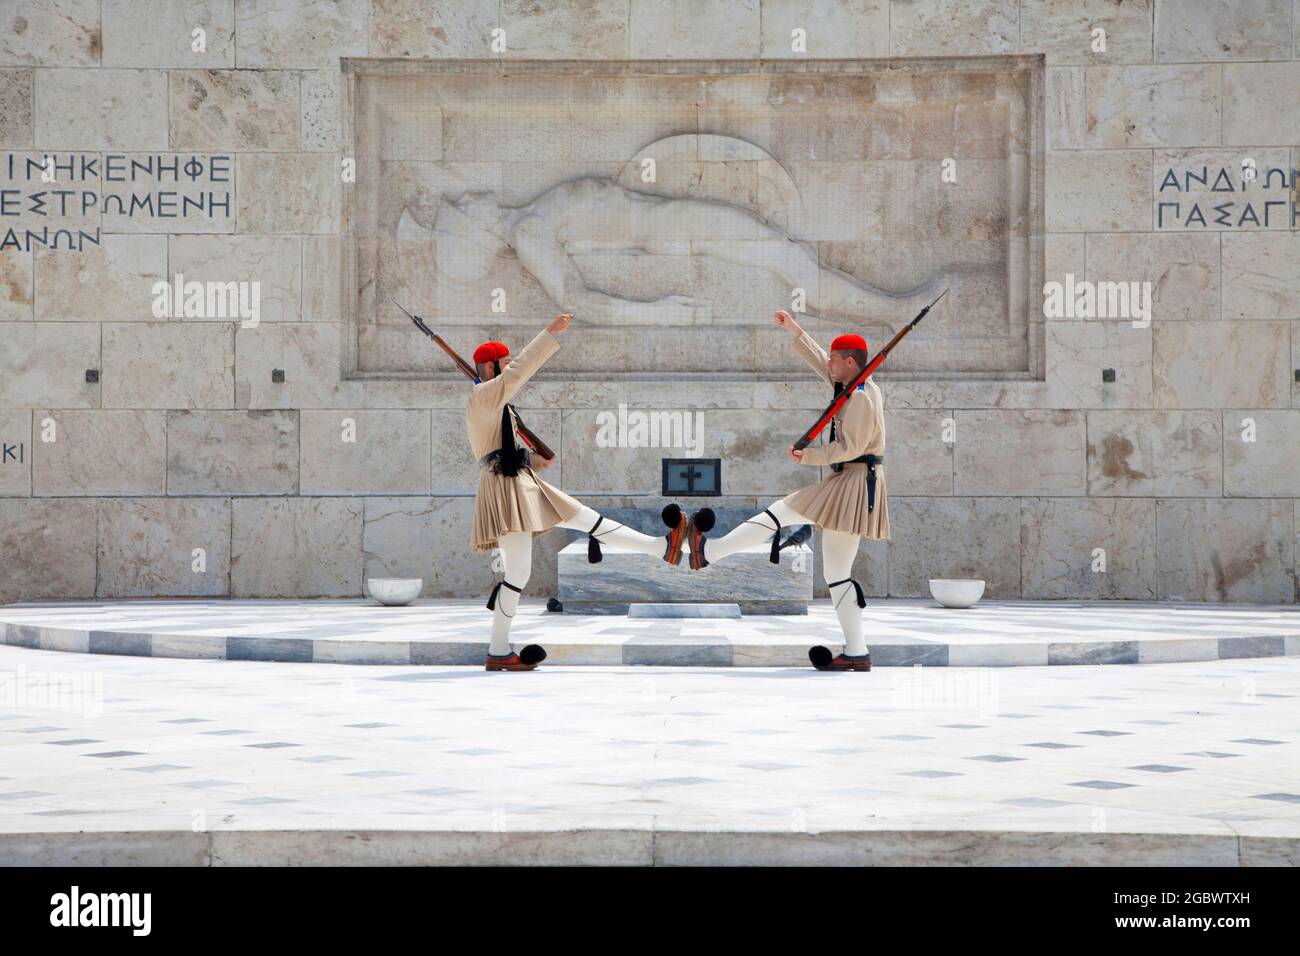 Guardie greche o Evzones - Guardia Presidenziale fuori dal Parlamento ellenico che custodisce la Tomba del Milite Ignoto - Atene, Grecia. Foto Stock